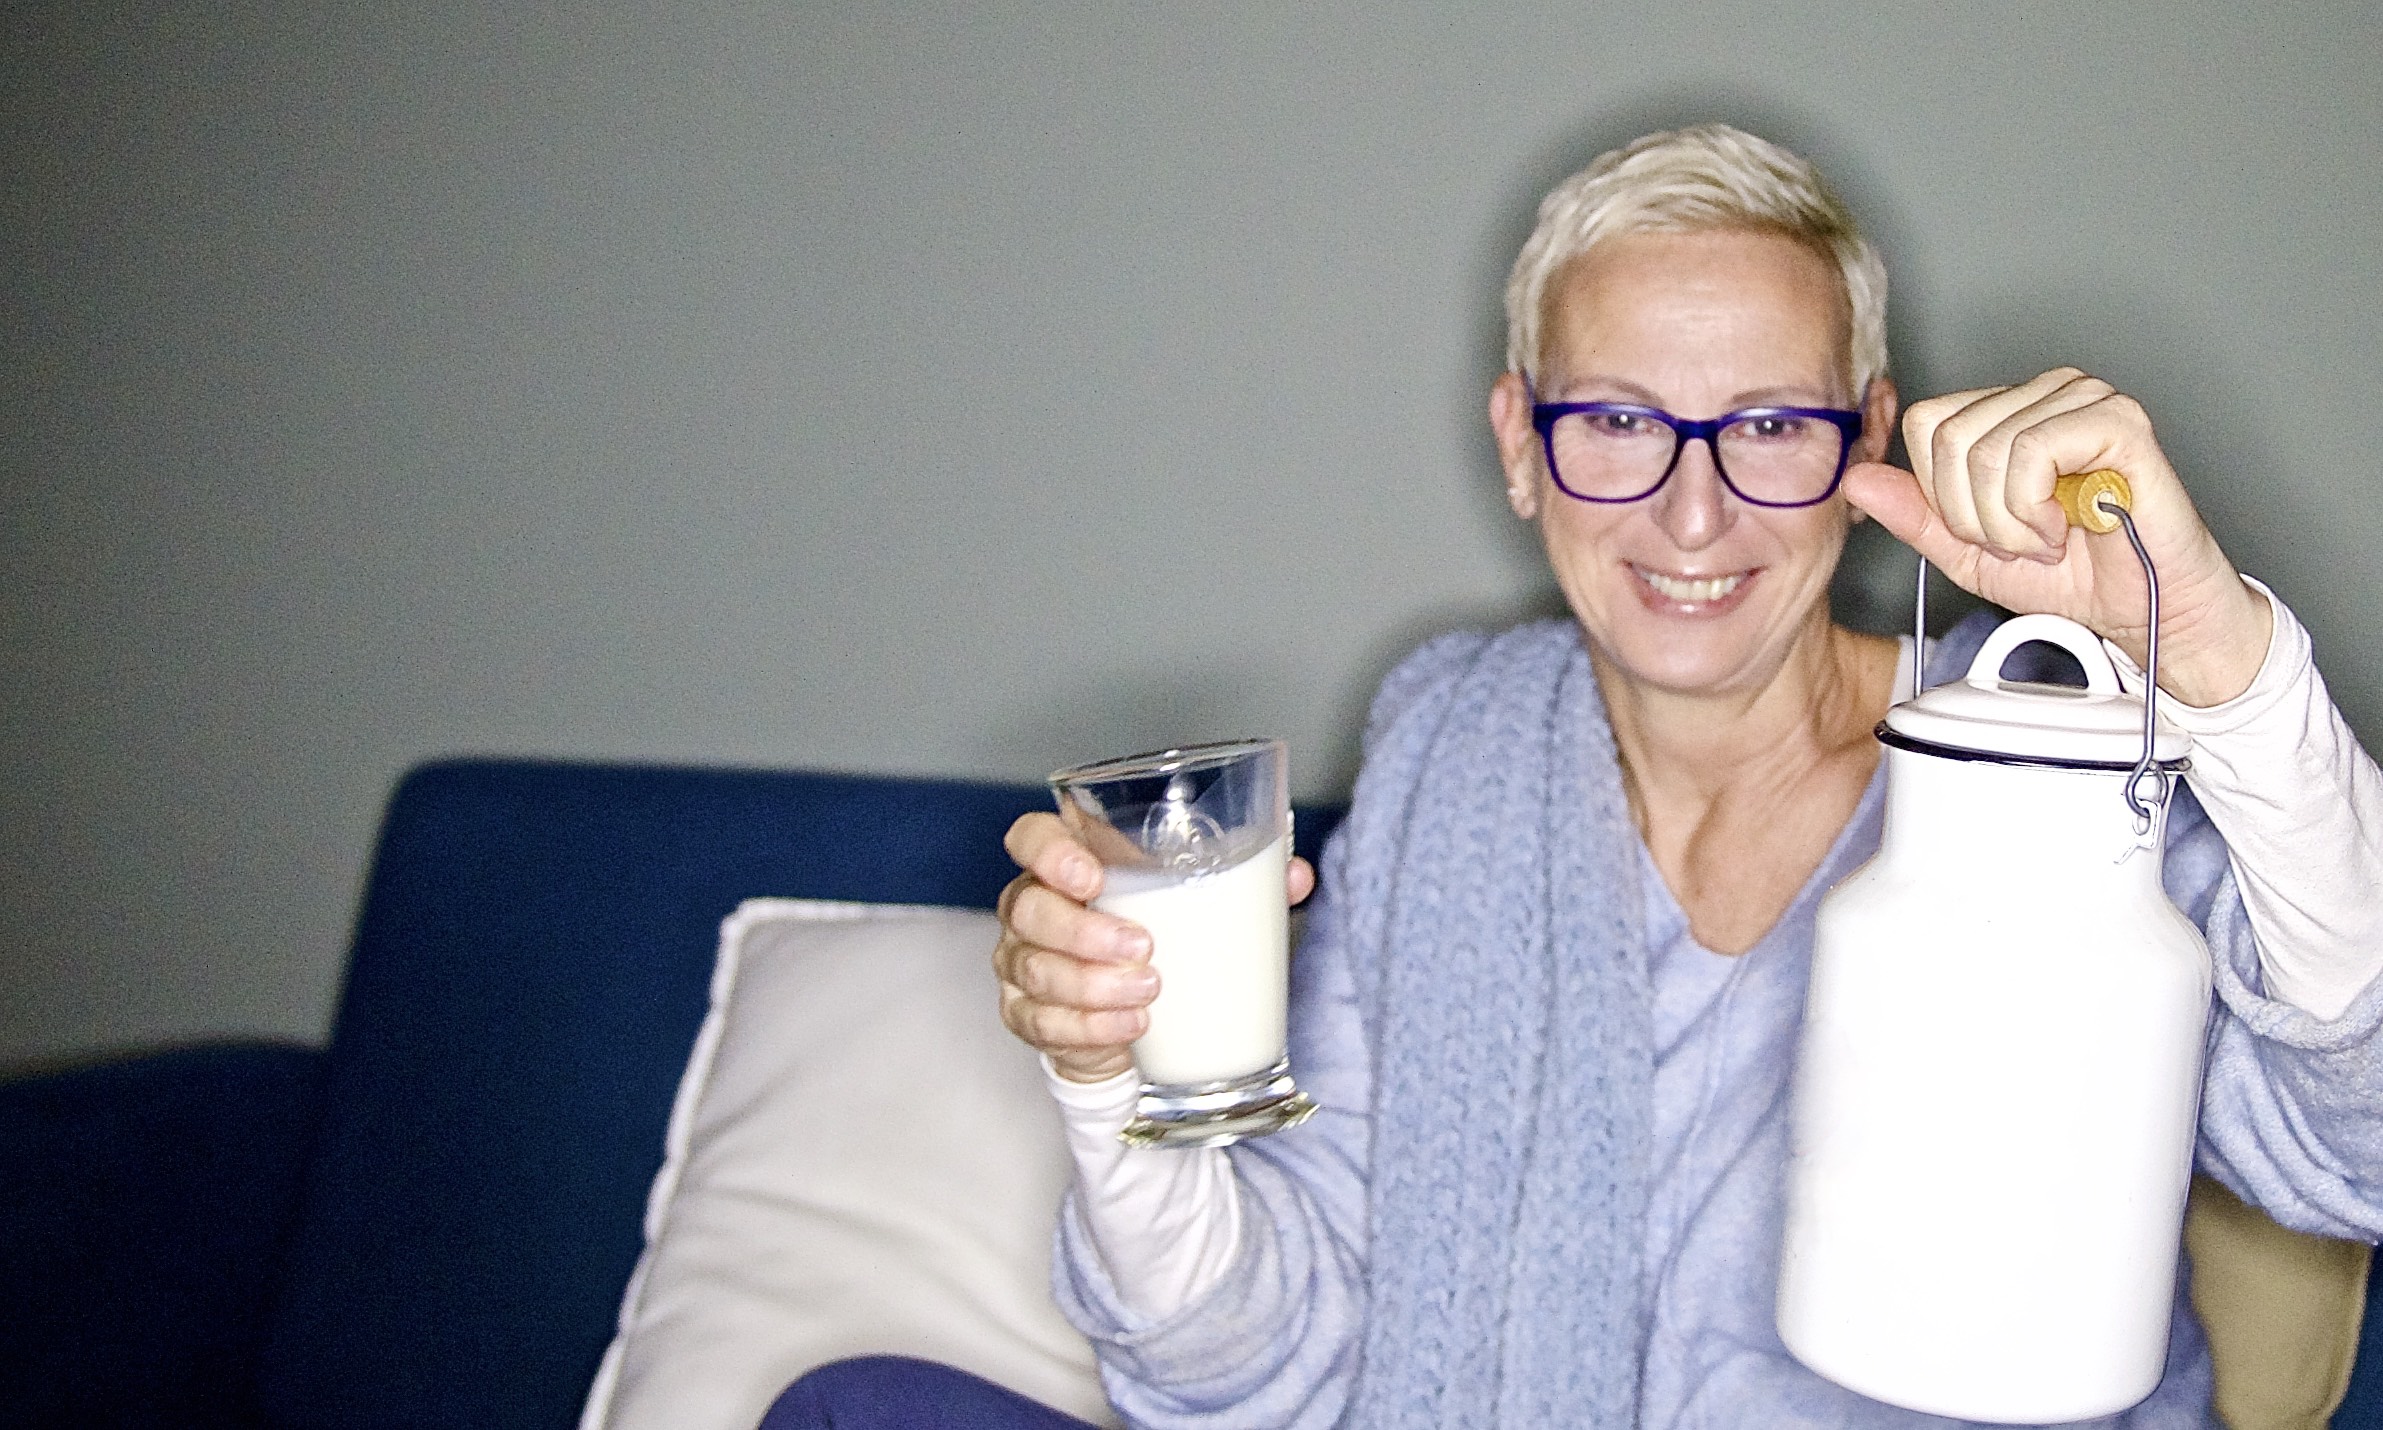 Frau mit Milchkanne und Glas Milch in der Hand